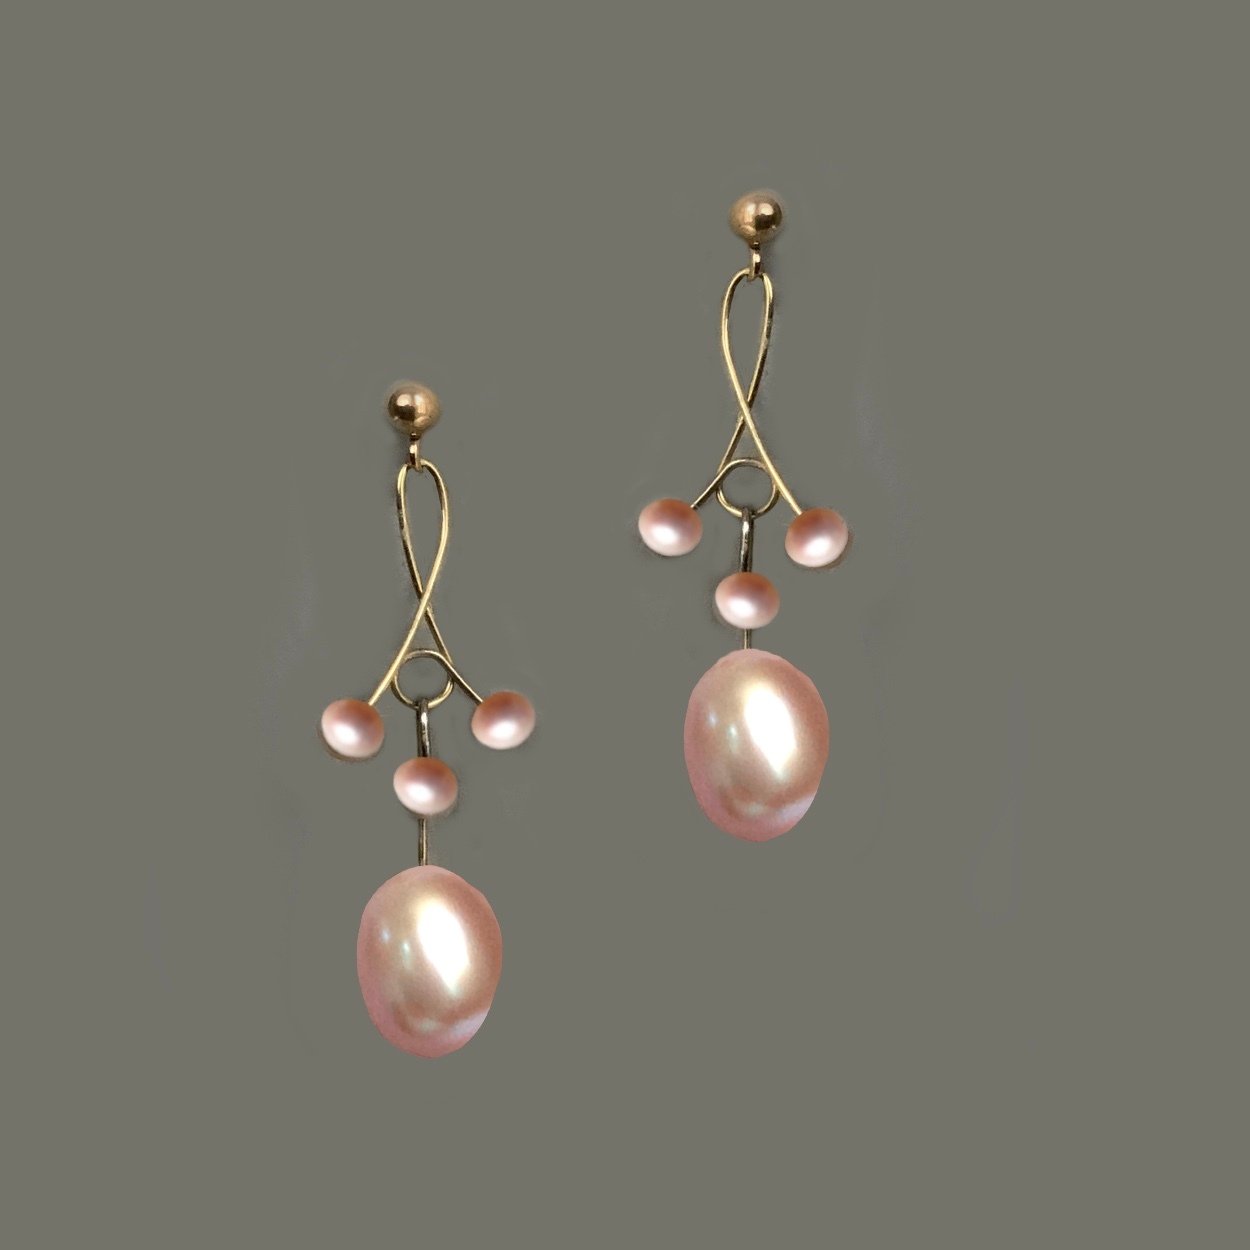 965-Pareloorbellen-goud-roze-parels-Eline-roze